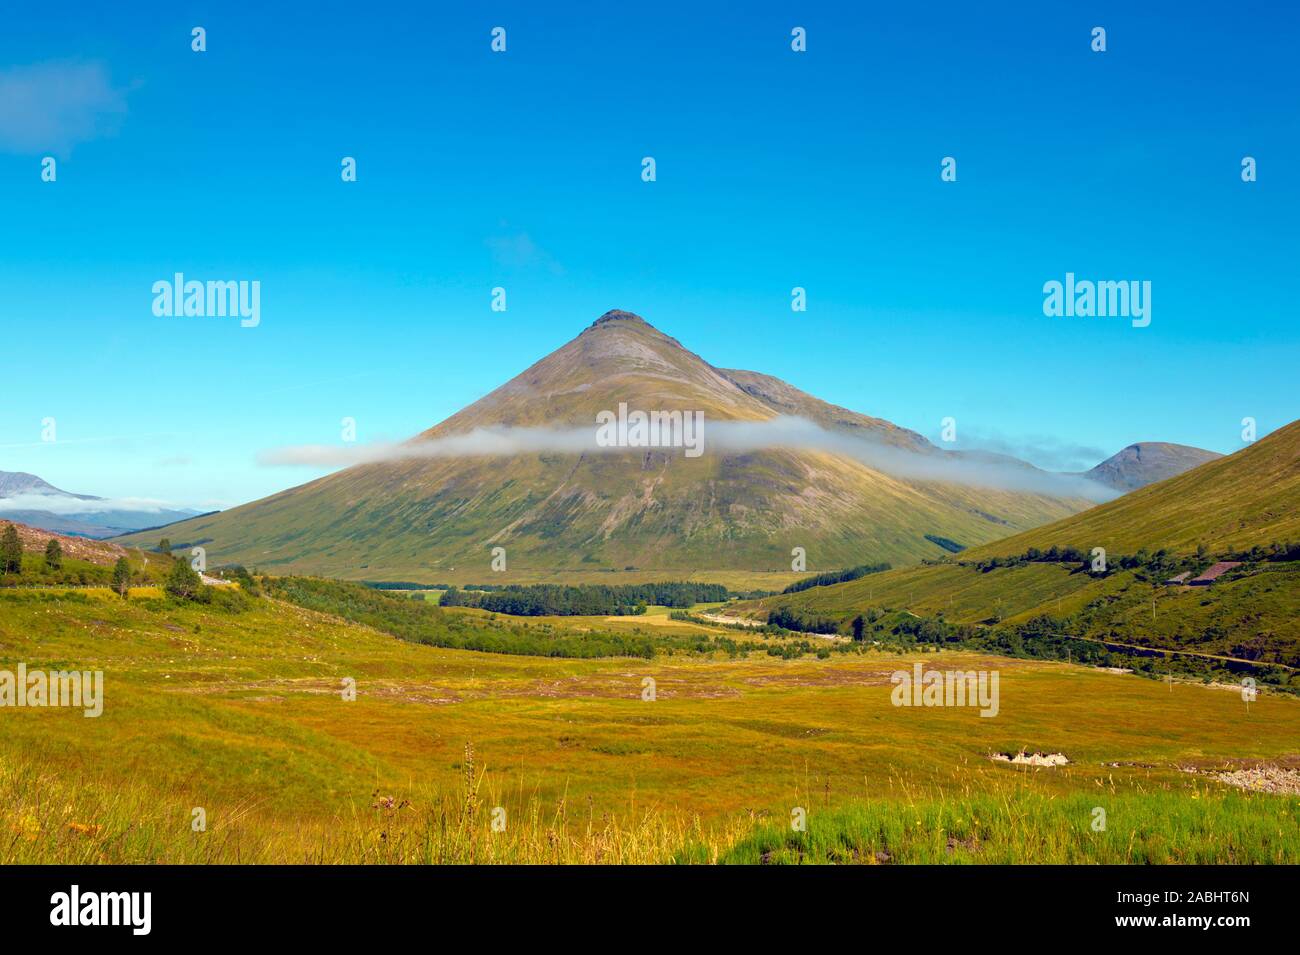 Glencoe, a spectacular and beautiful Scottish landscape. Stock Photo